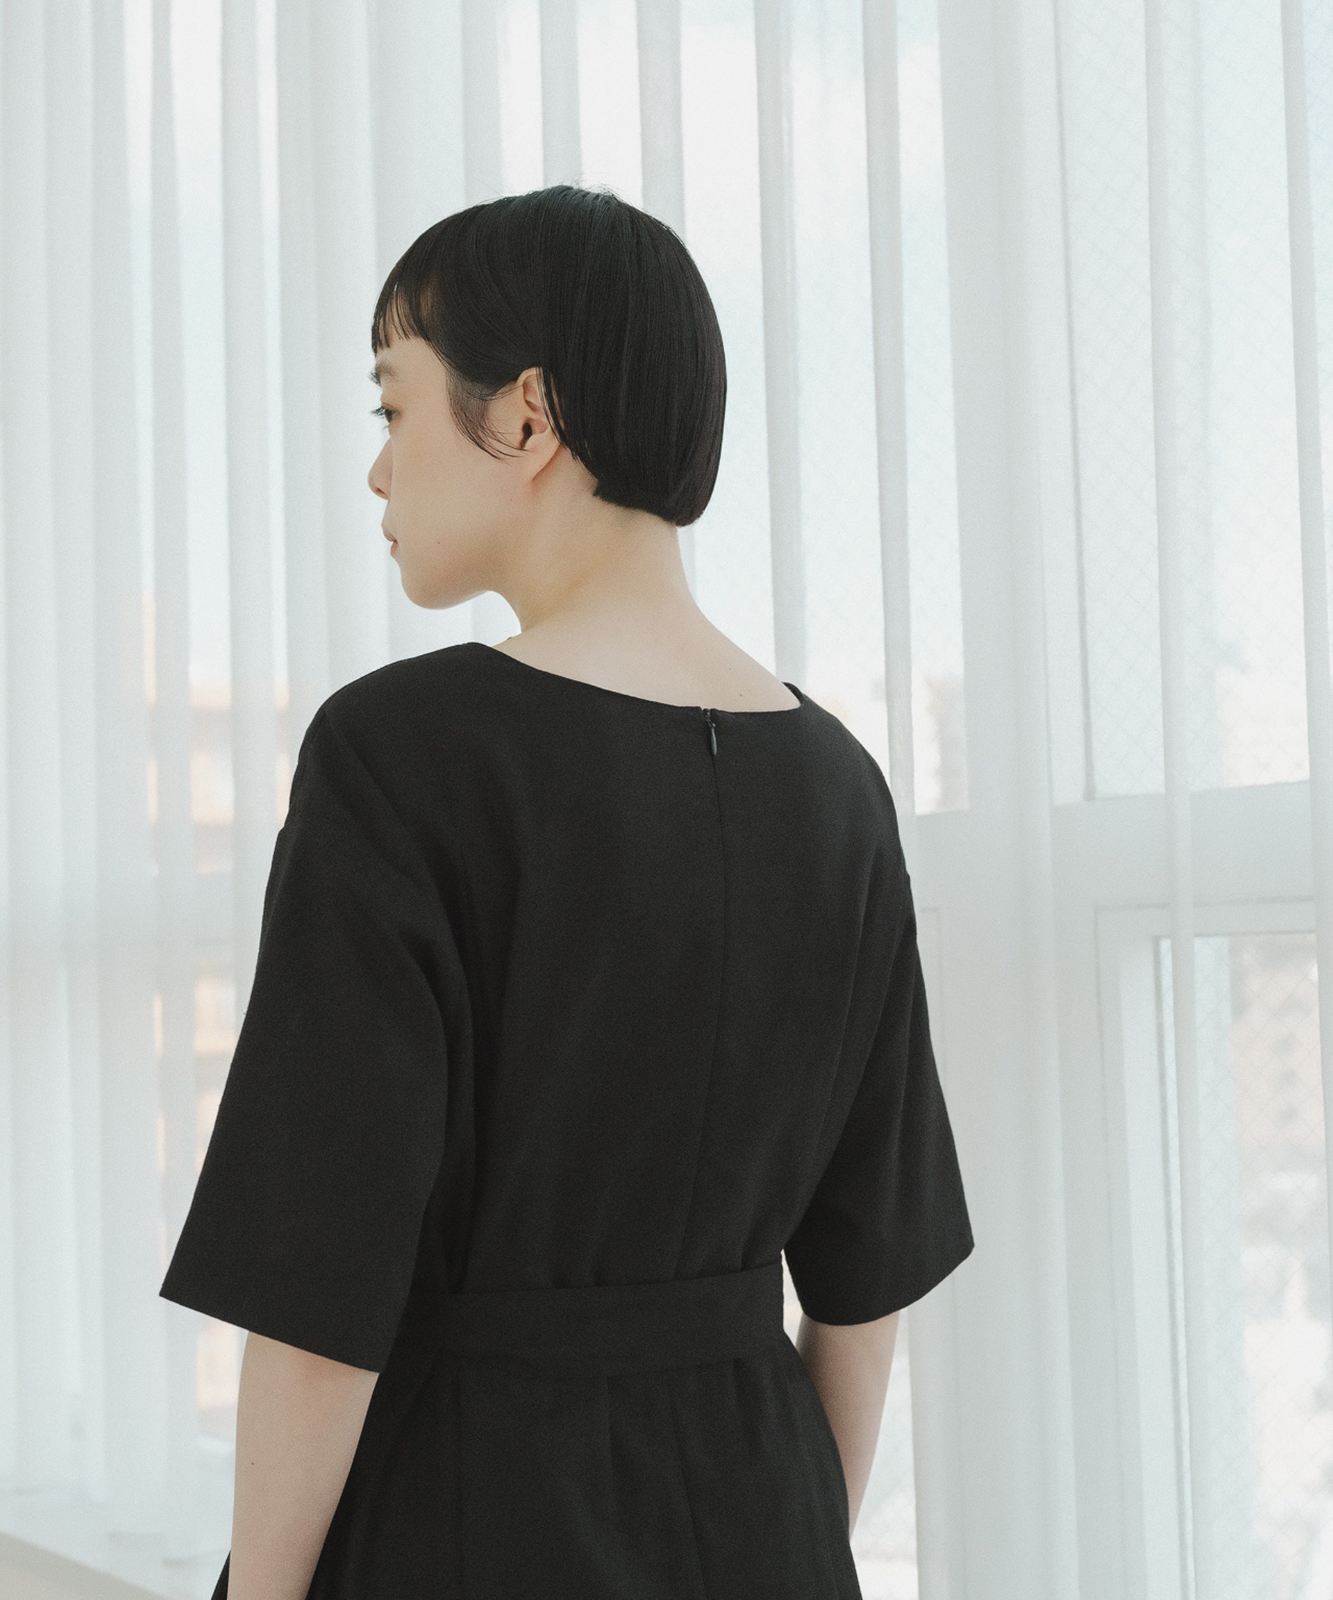 ≪在庫販売≫【THE DRESS #36】black linen dress（ブラックリネン